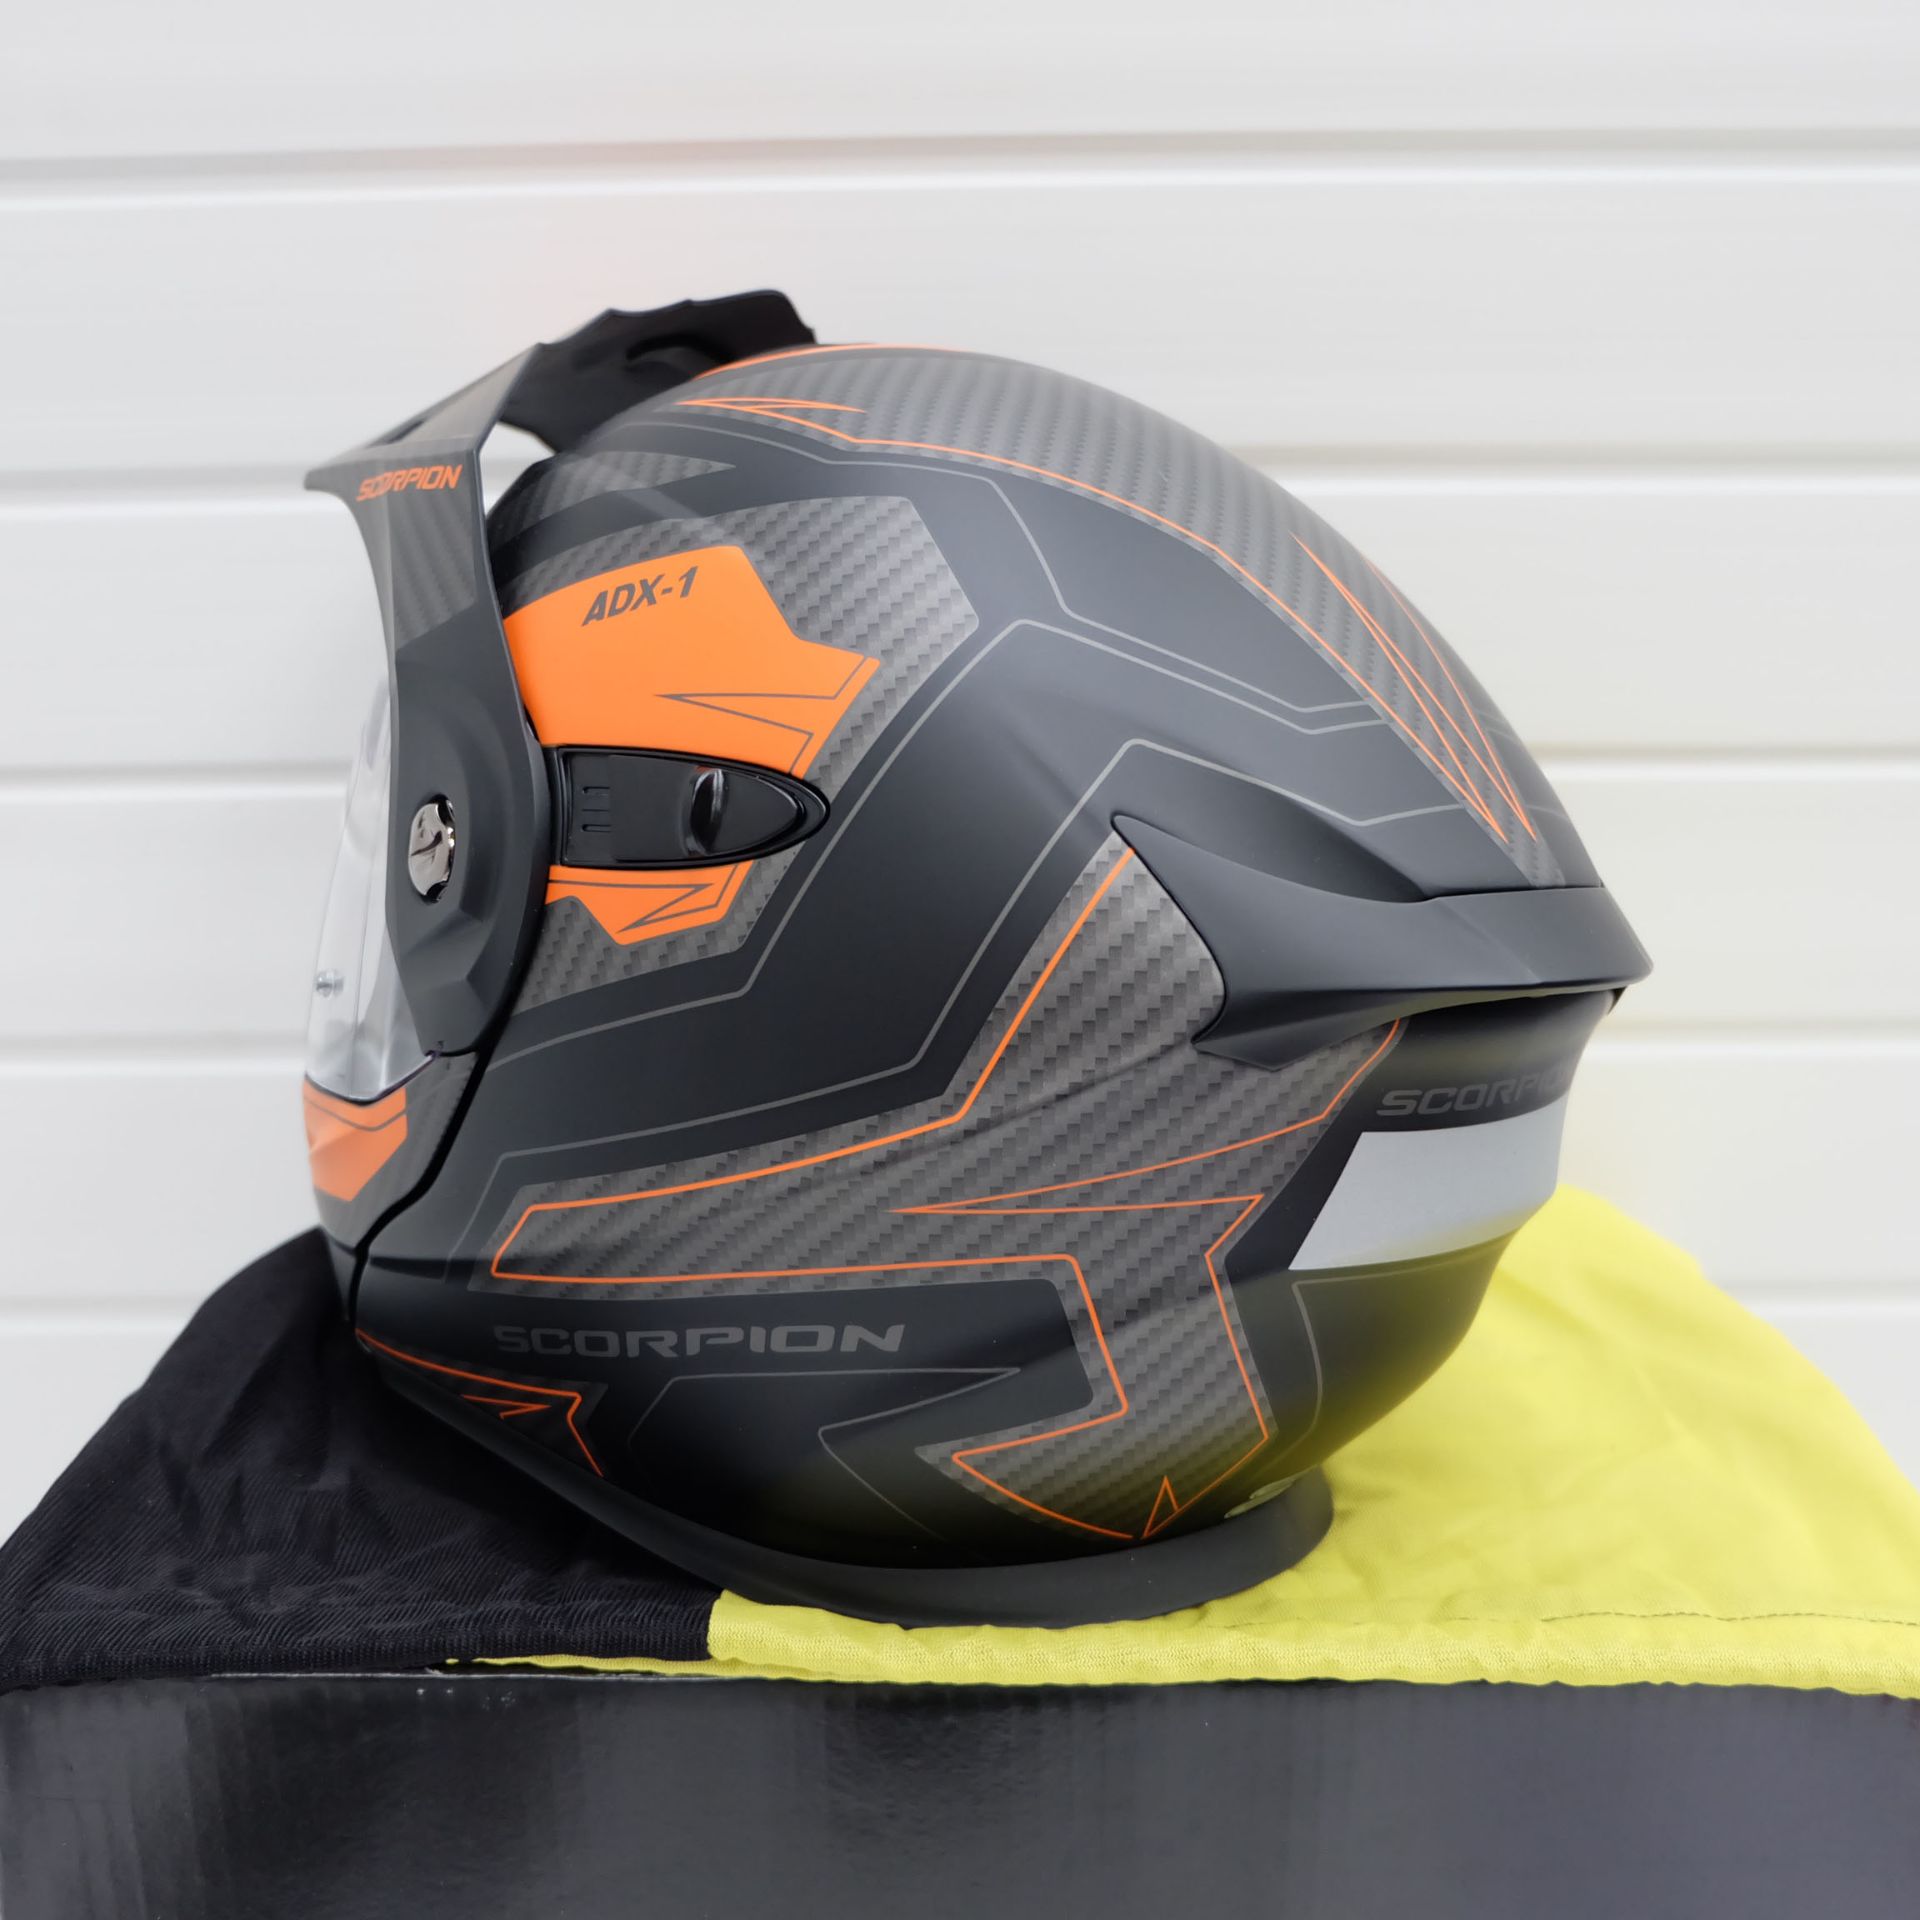 Scorpion Exo ADX-1 Adventure Helmet Tucson Black/Orange Size Small - Image 4 of 12